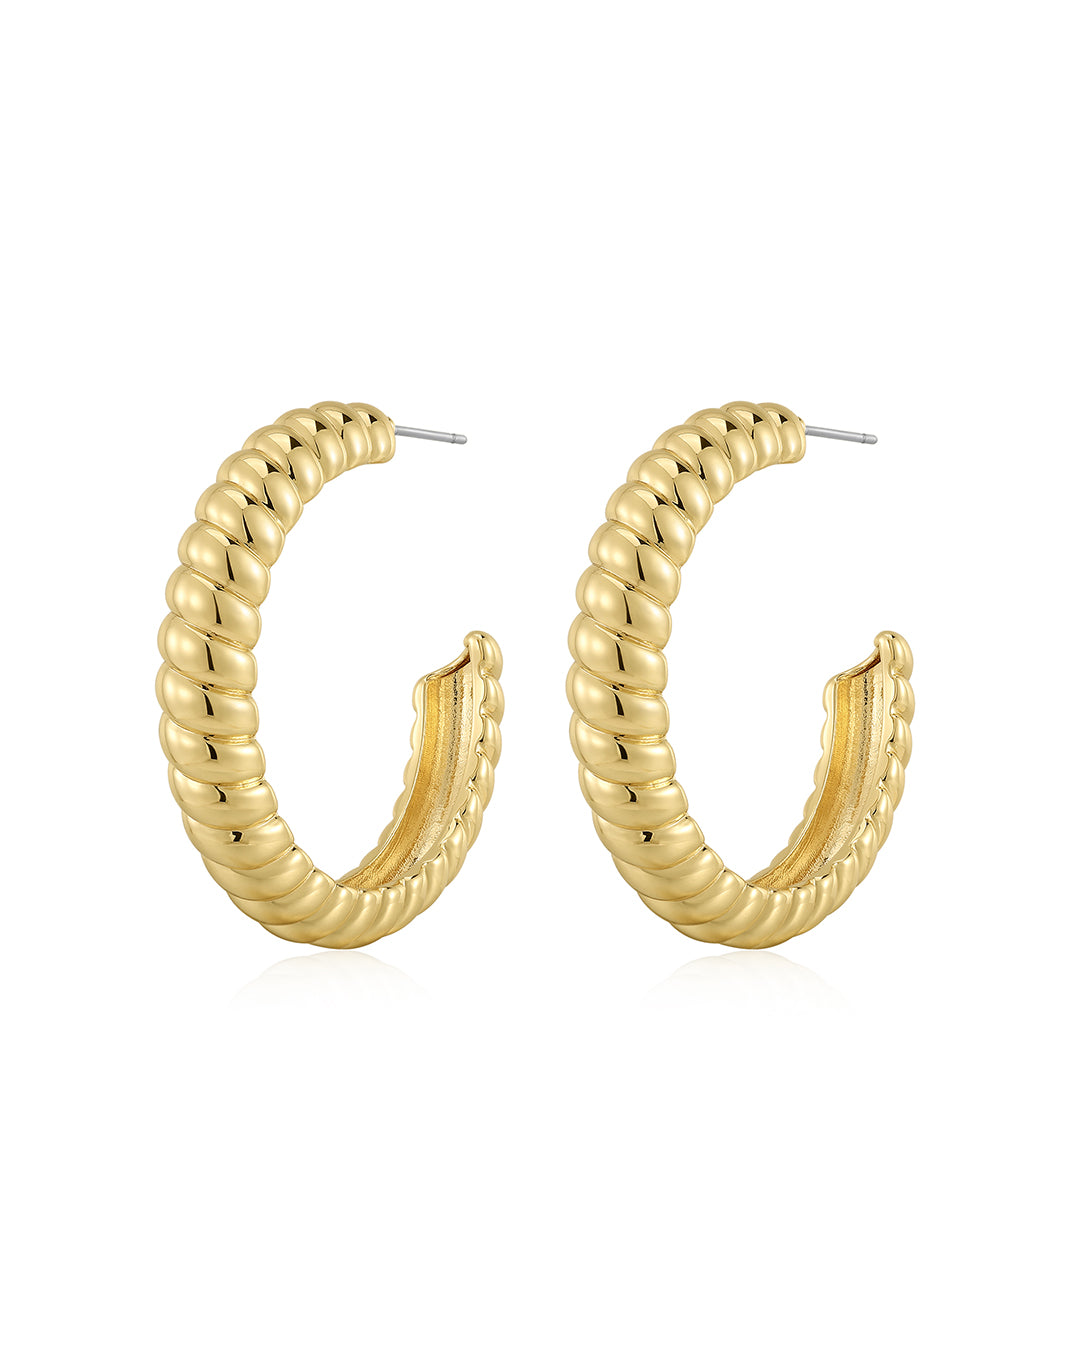 Luv Aj XL Ridged Hoop Earrings in Polished 14k Gold Plated